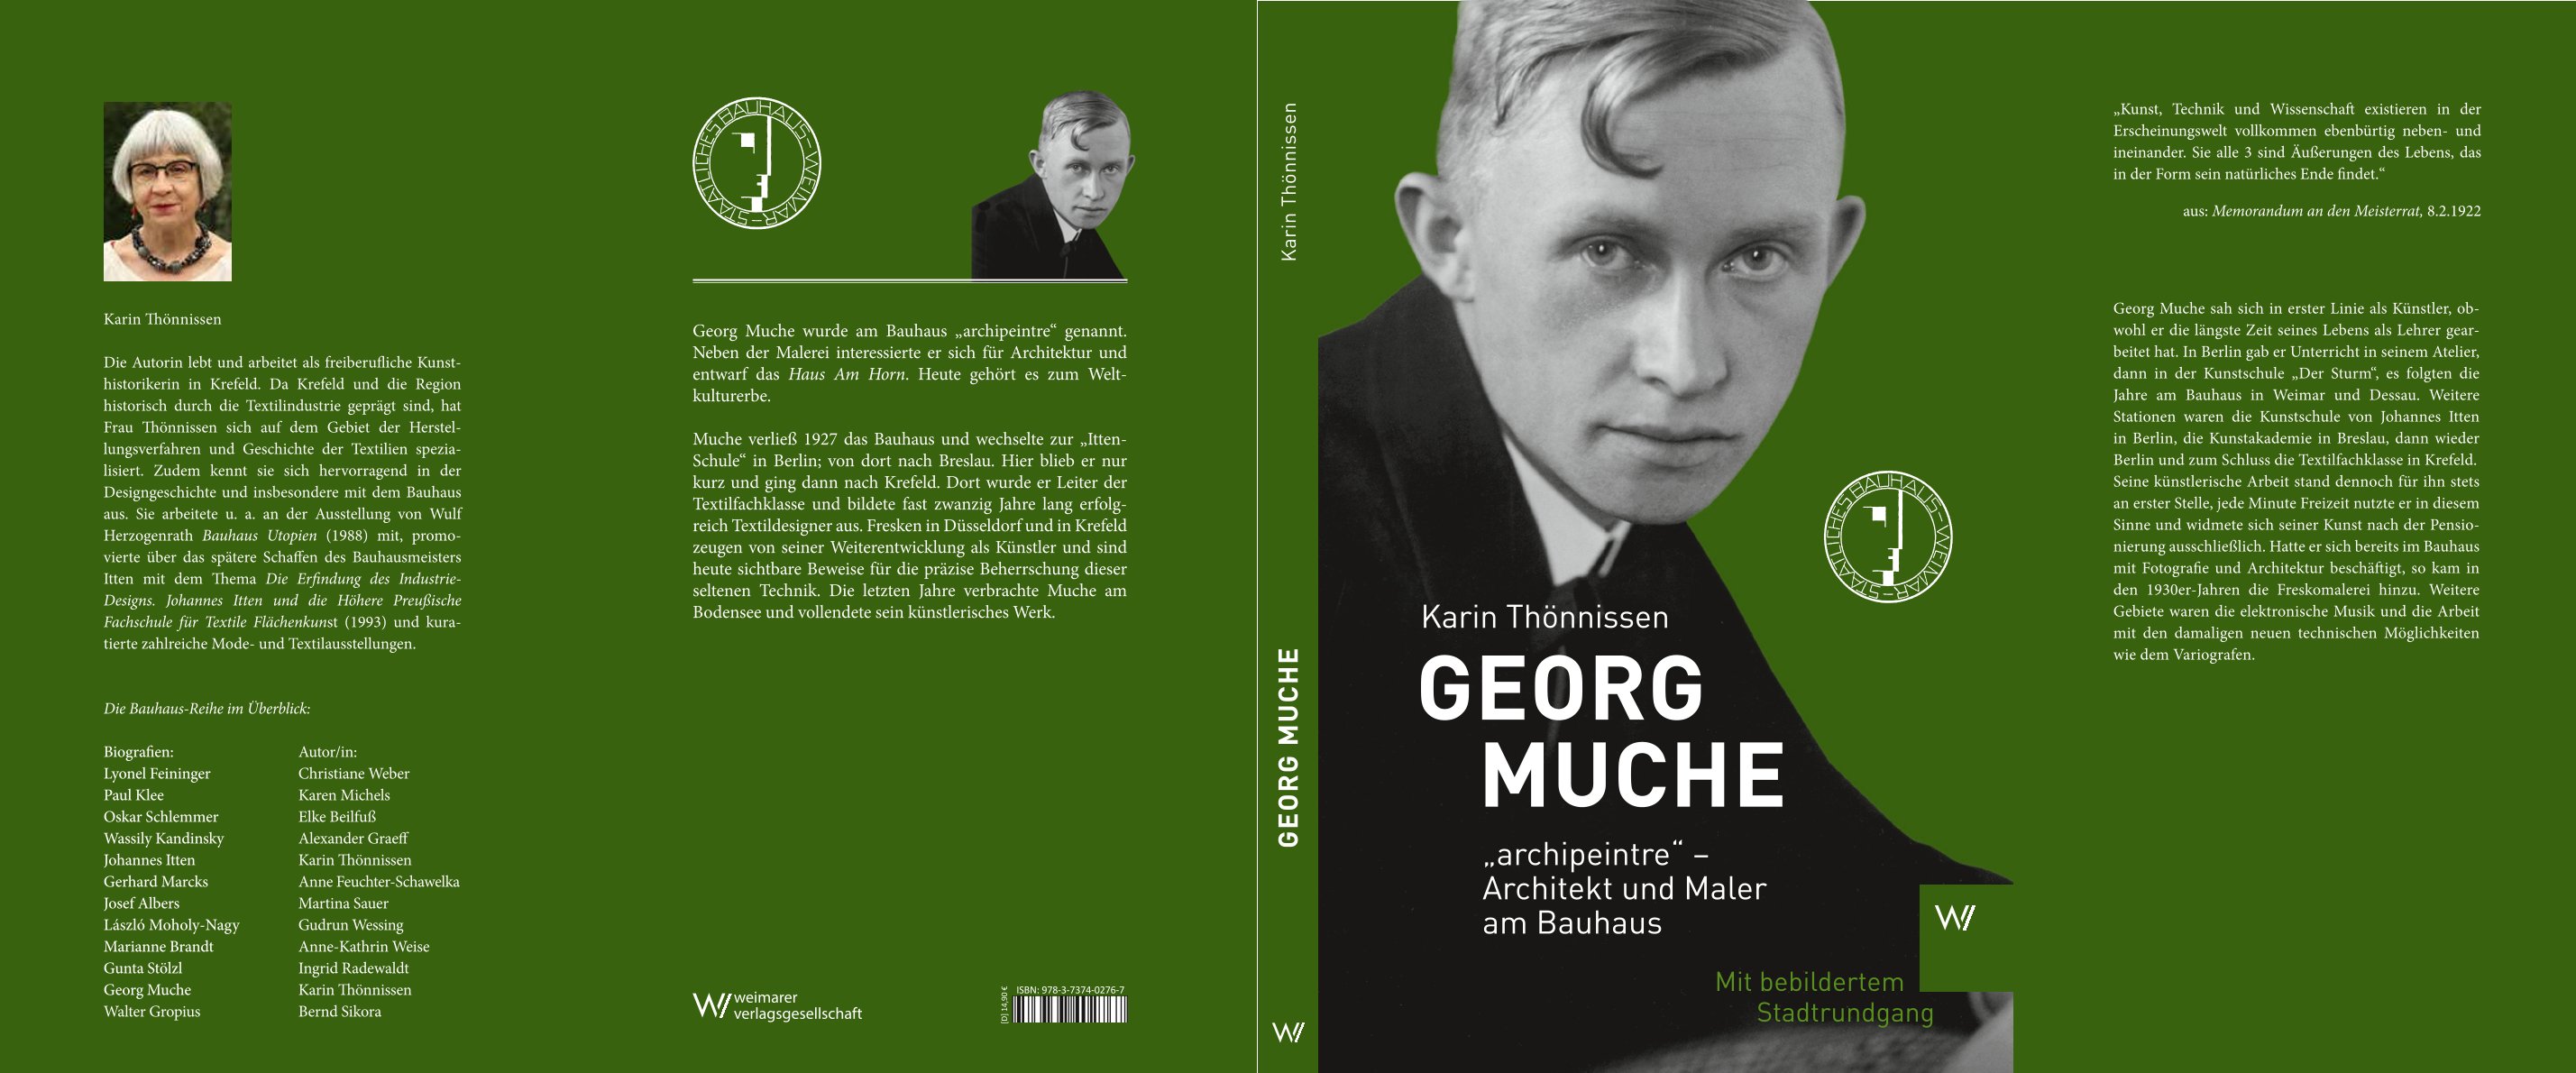 Georg Muche